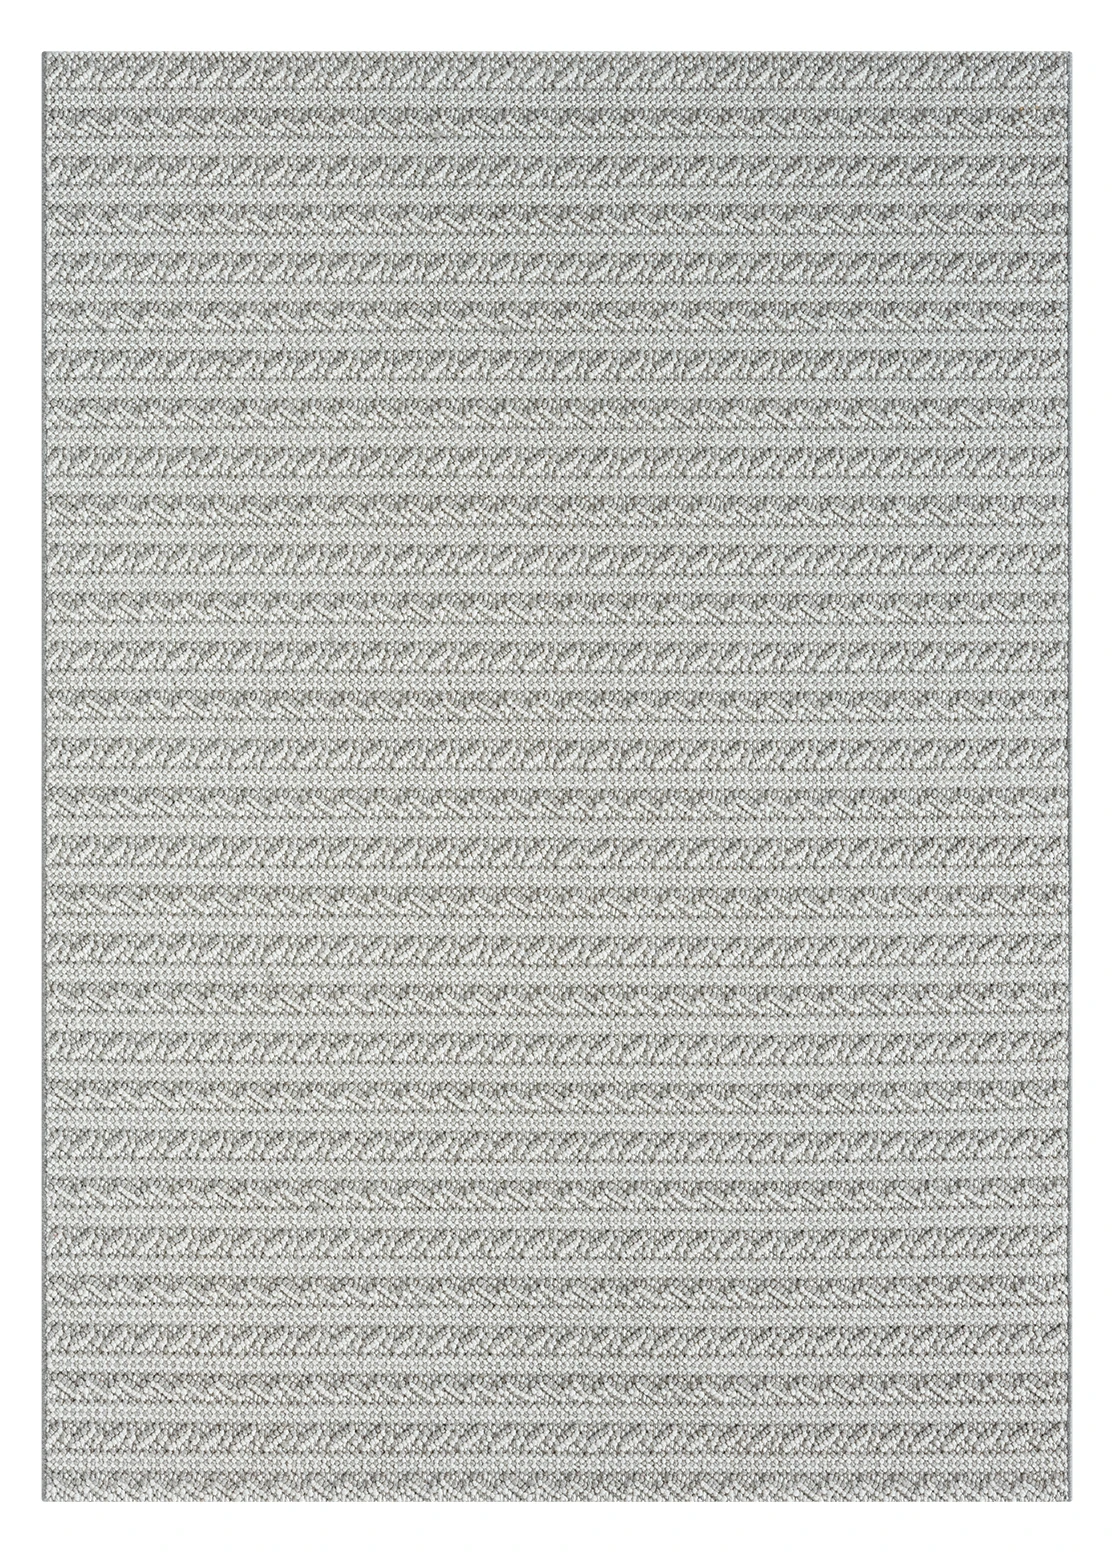 שטיח דגם CALIFORNIA לולאות משולבות צבע אפור לבן   : image 3